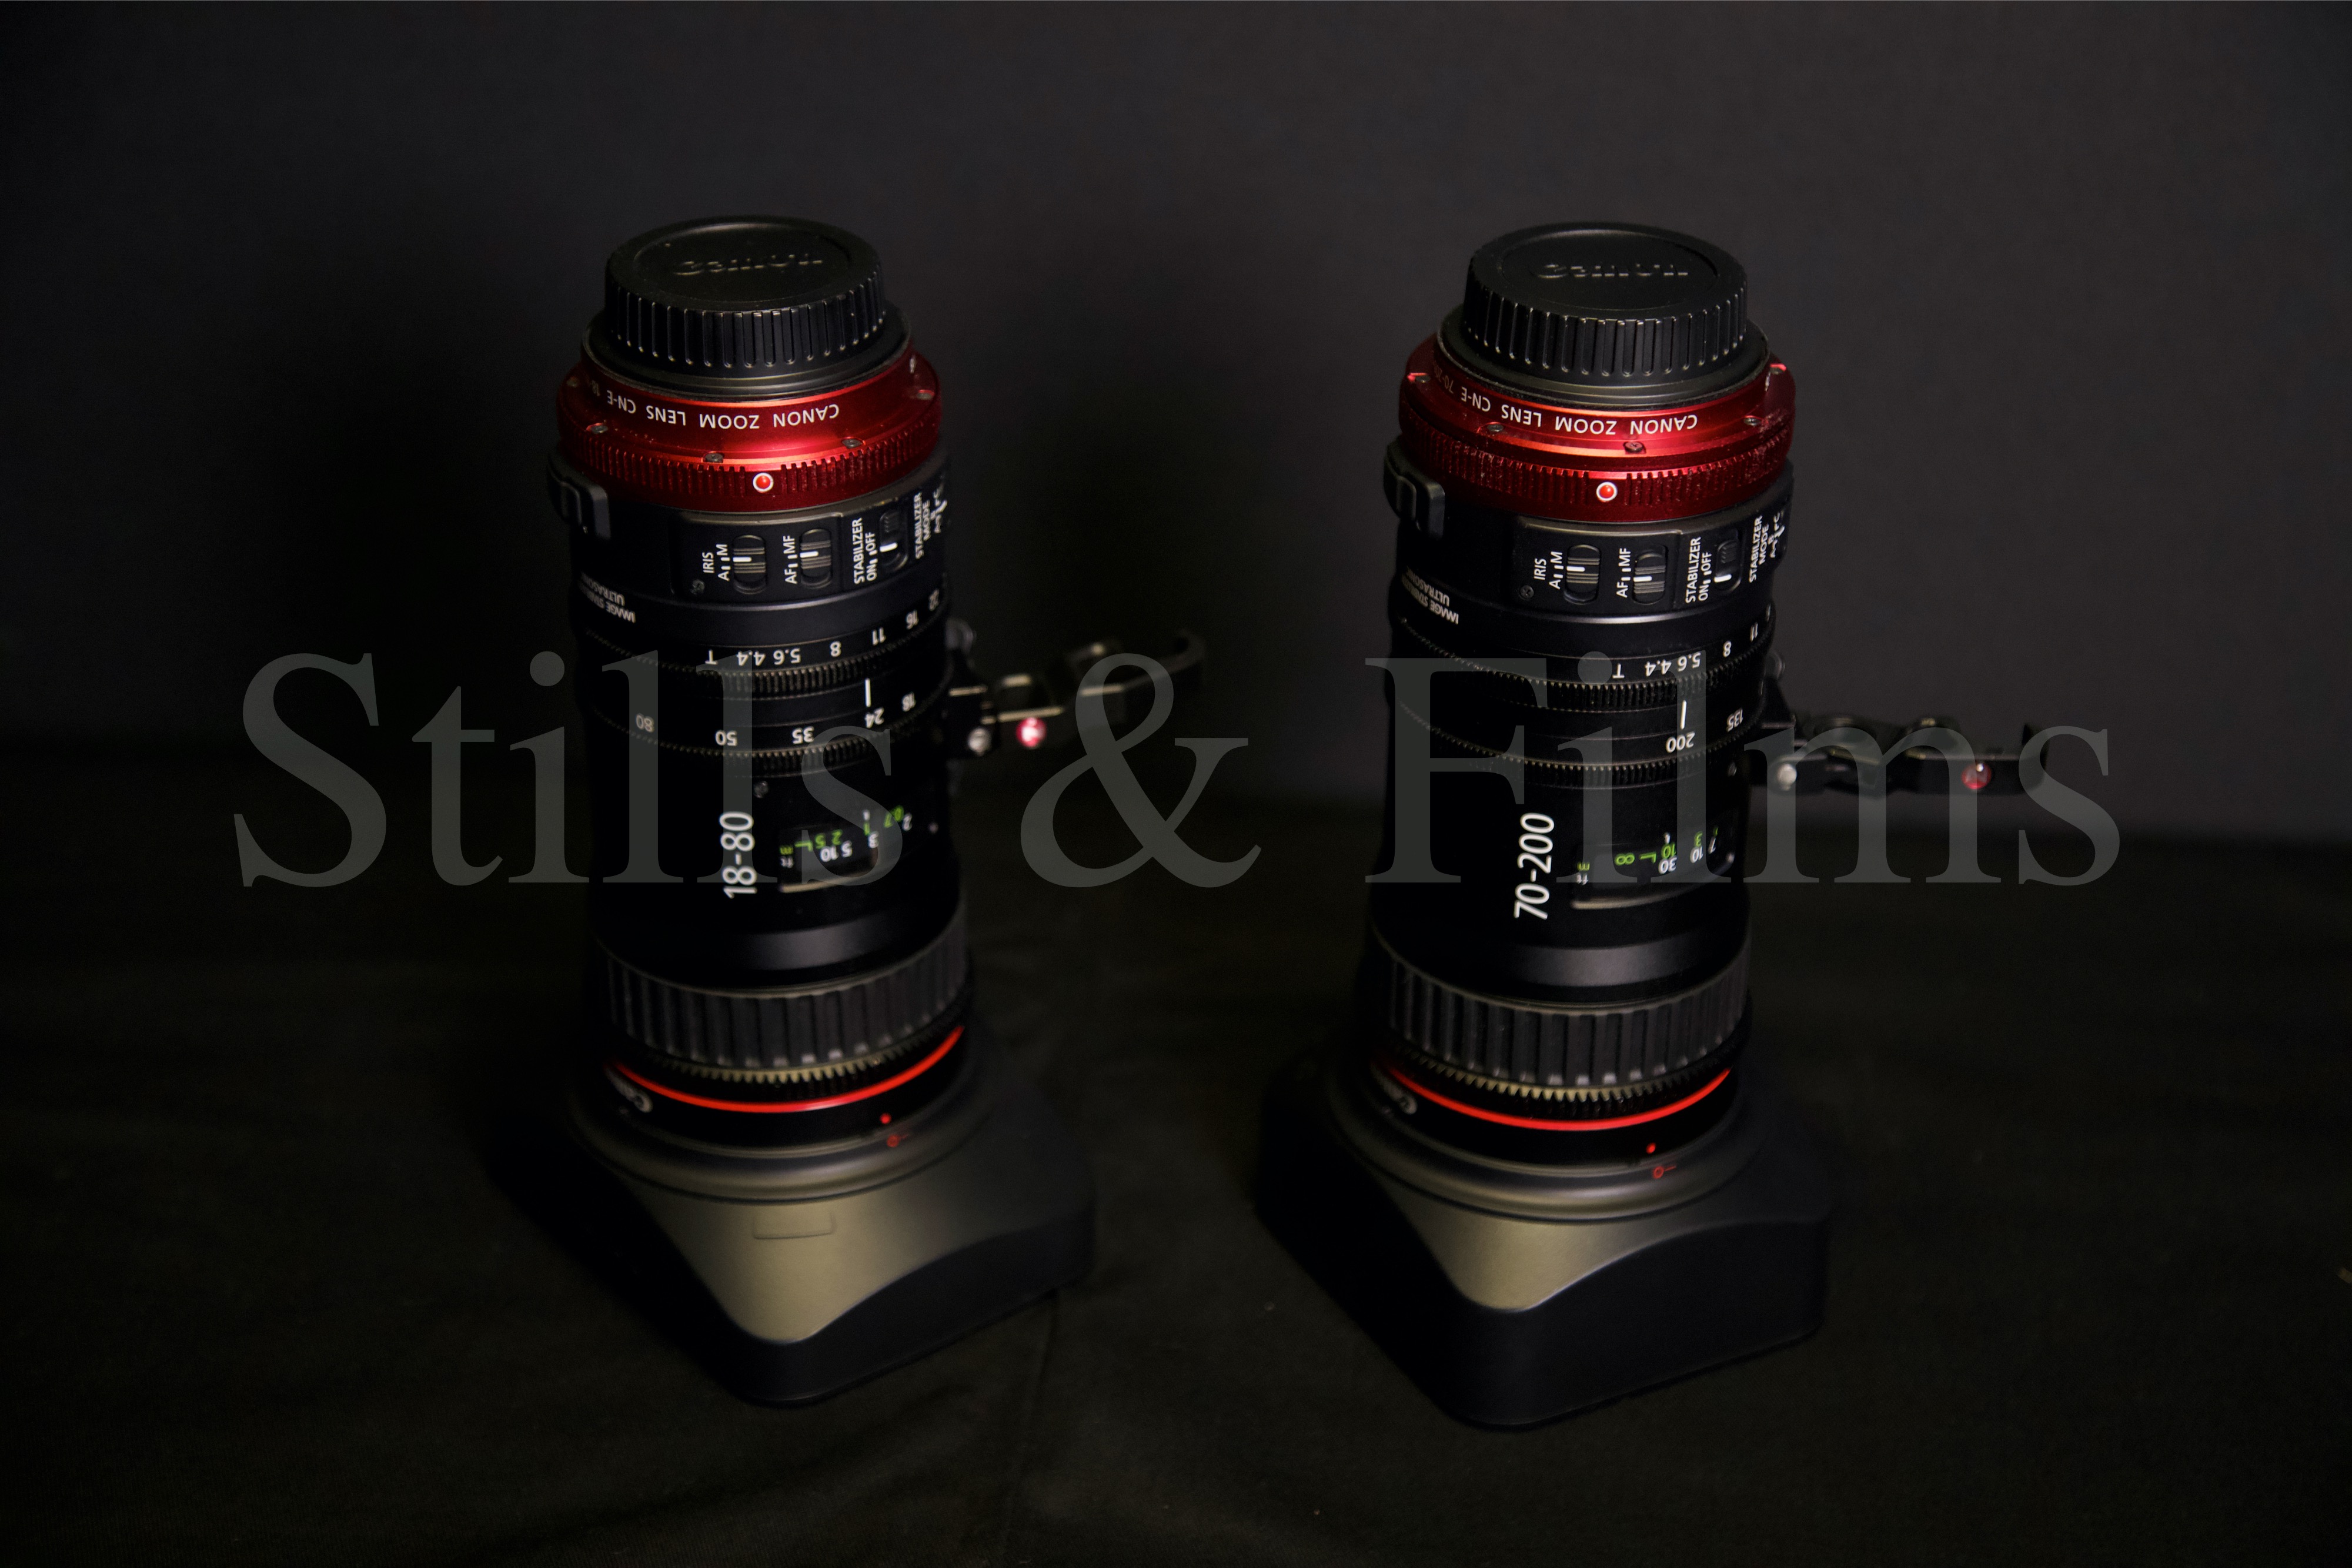 Canon 18-80mm & 70-200mm motorised cinema zoom lenses